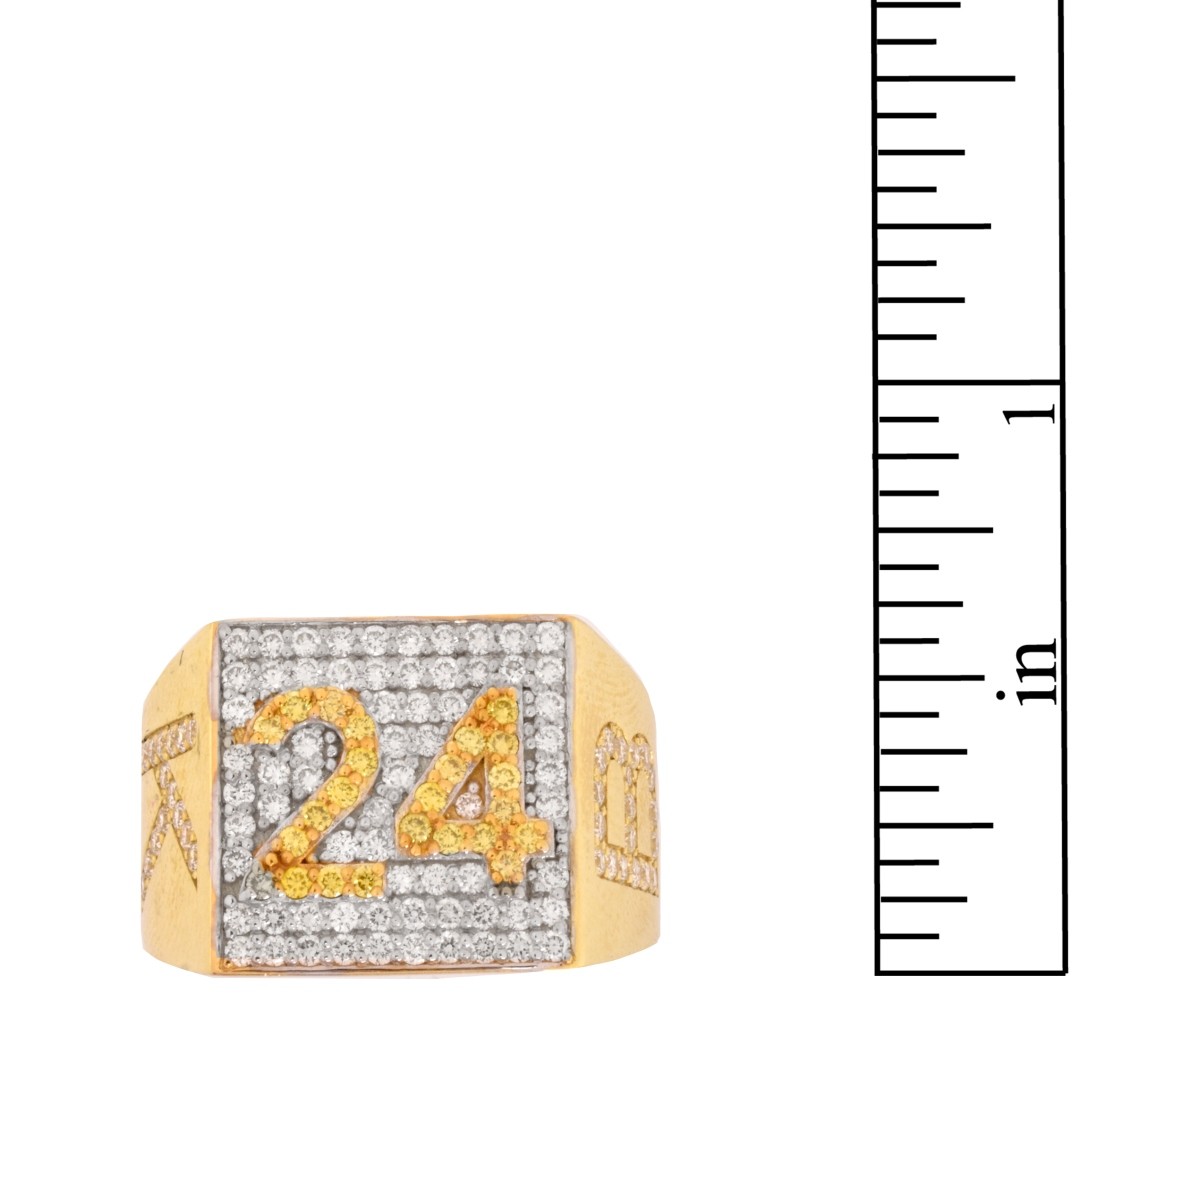 "Kobi Bryant 24" Diamond and 18K Ring